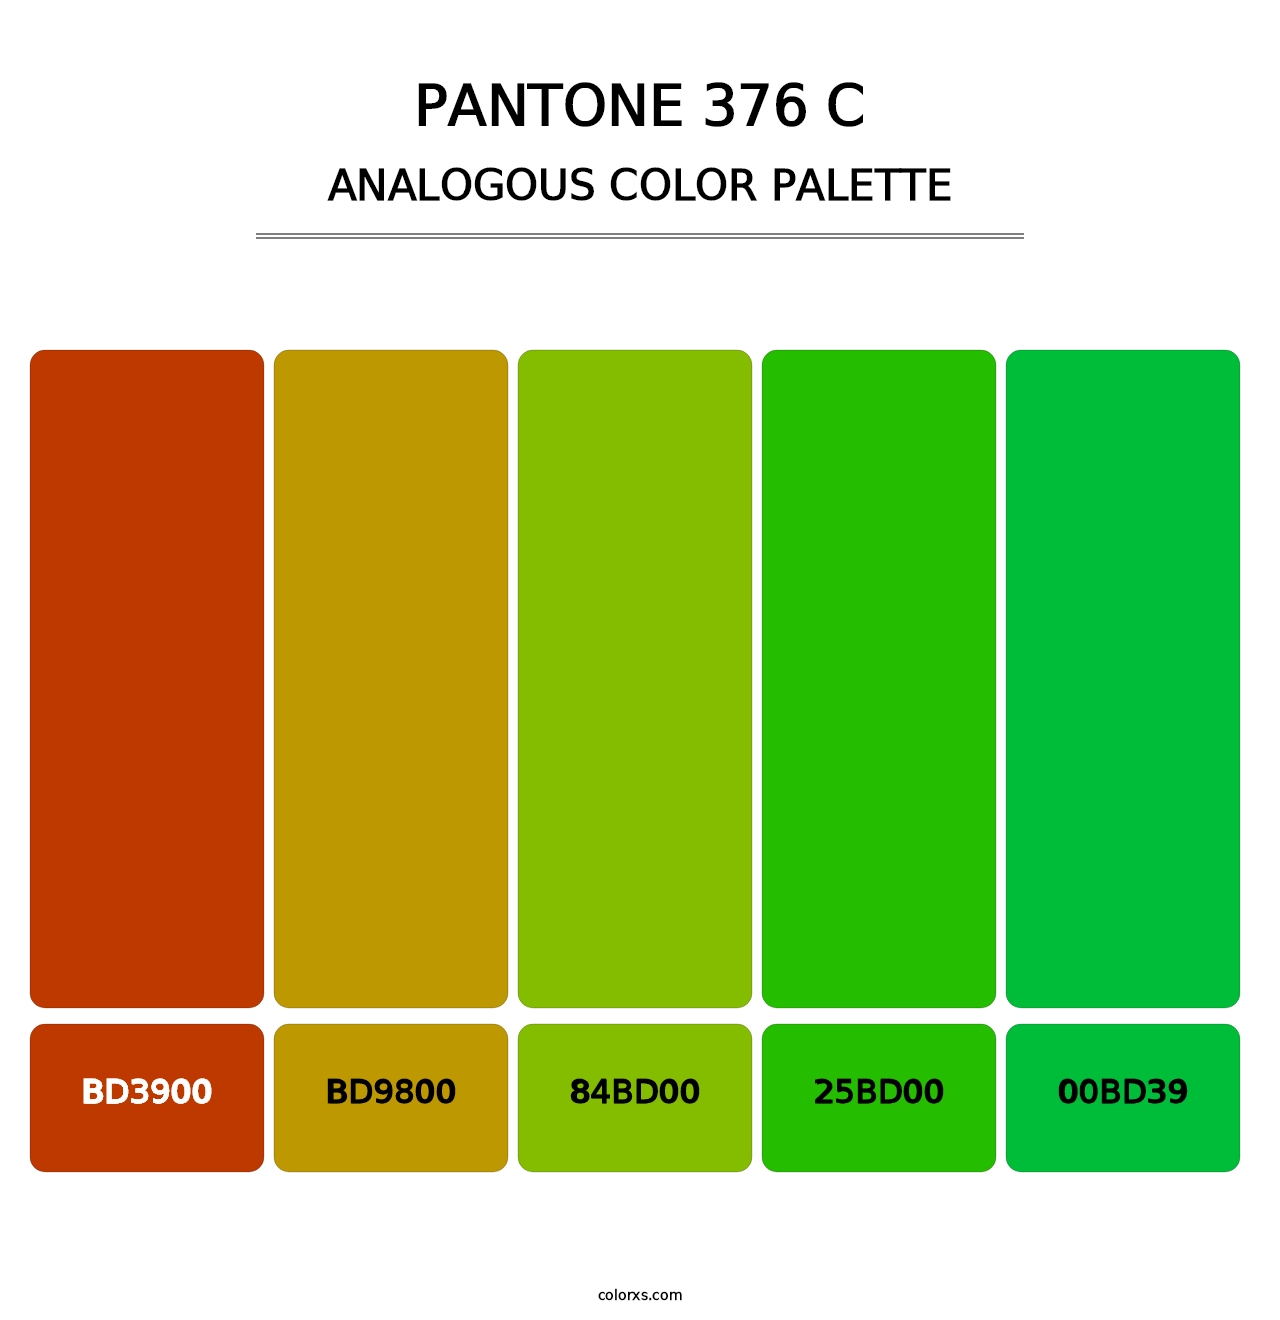 PANTONE 376 C - Analogous Color Palette